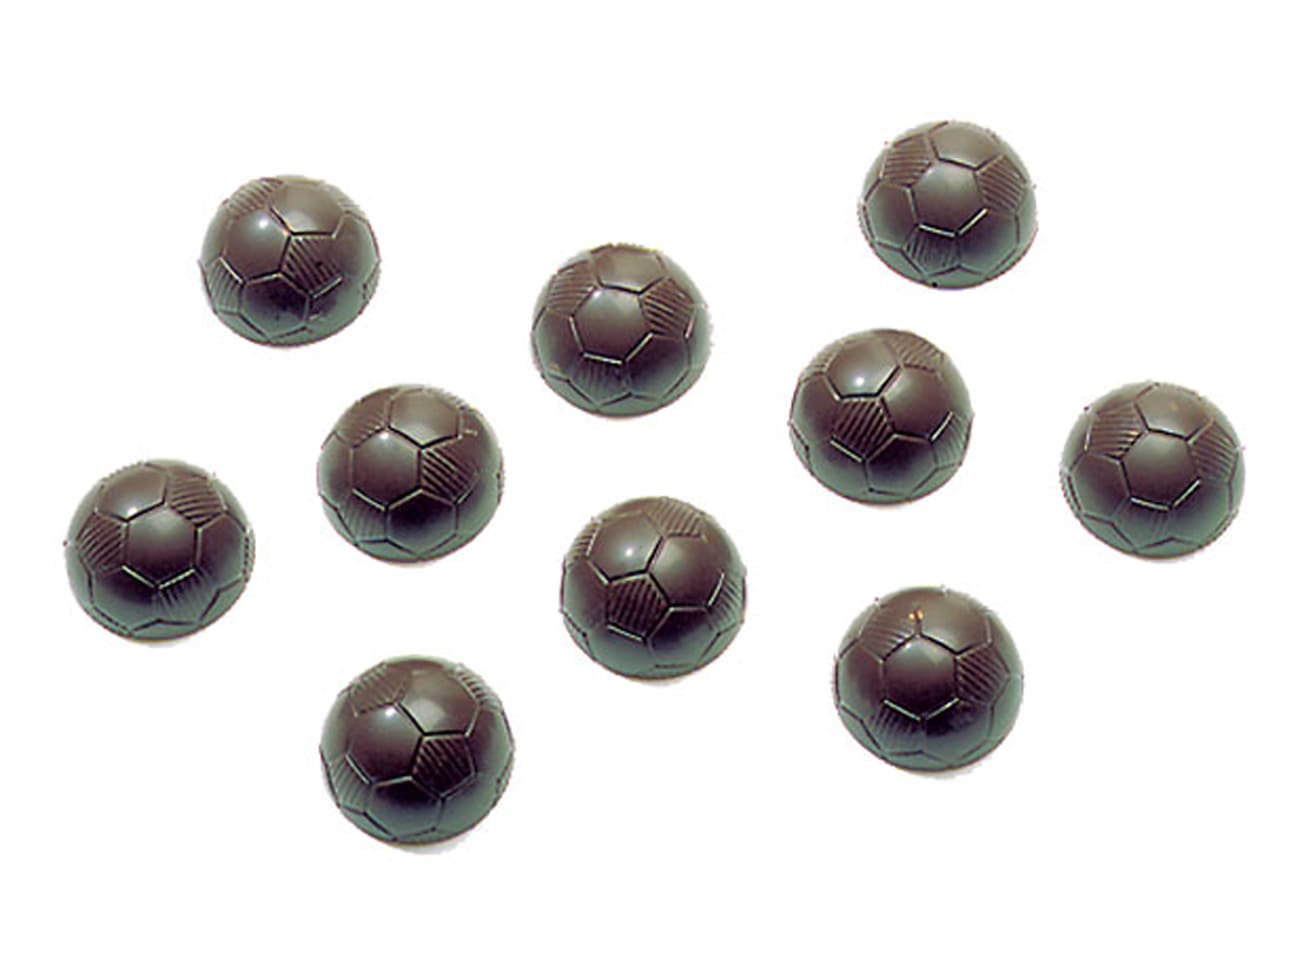 Moule chocolat - ballon de foot - Ø 22 cm - Meilleur du Chef